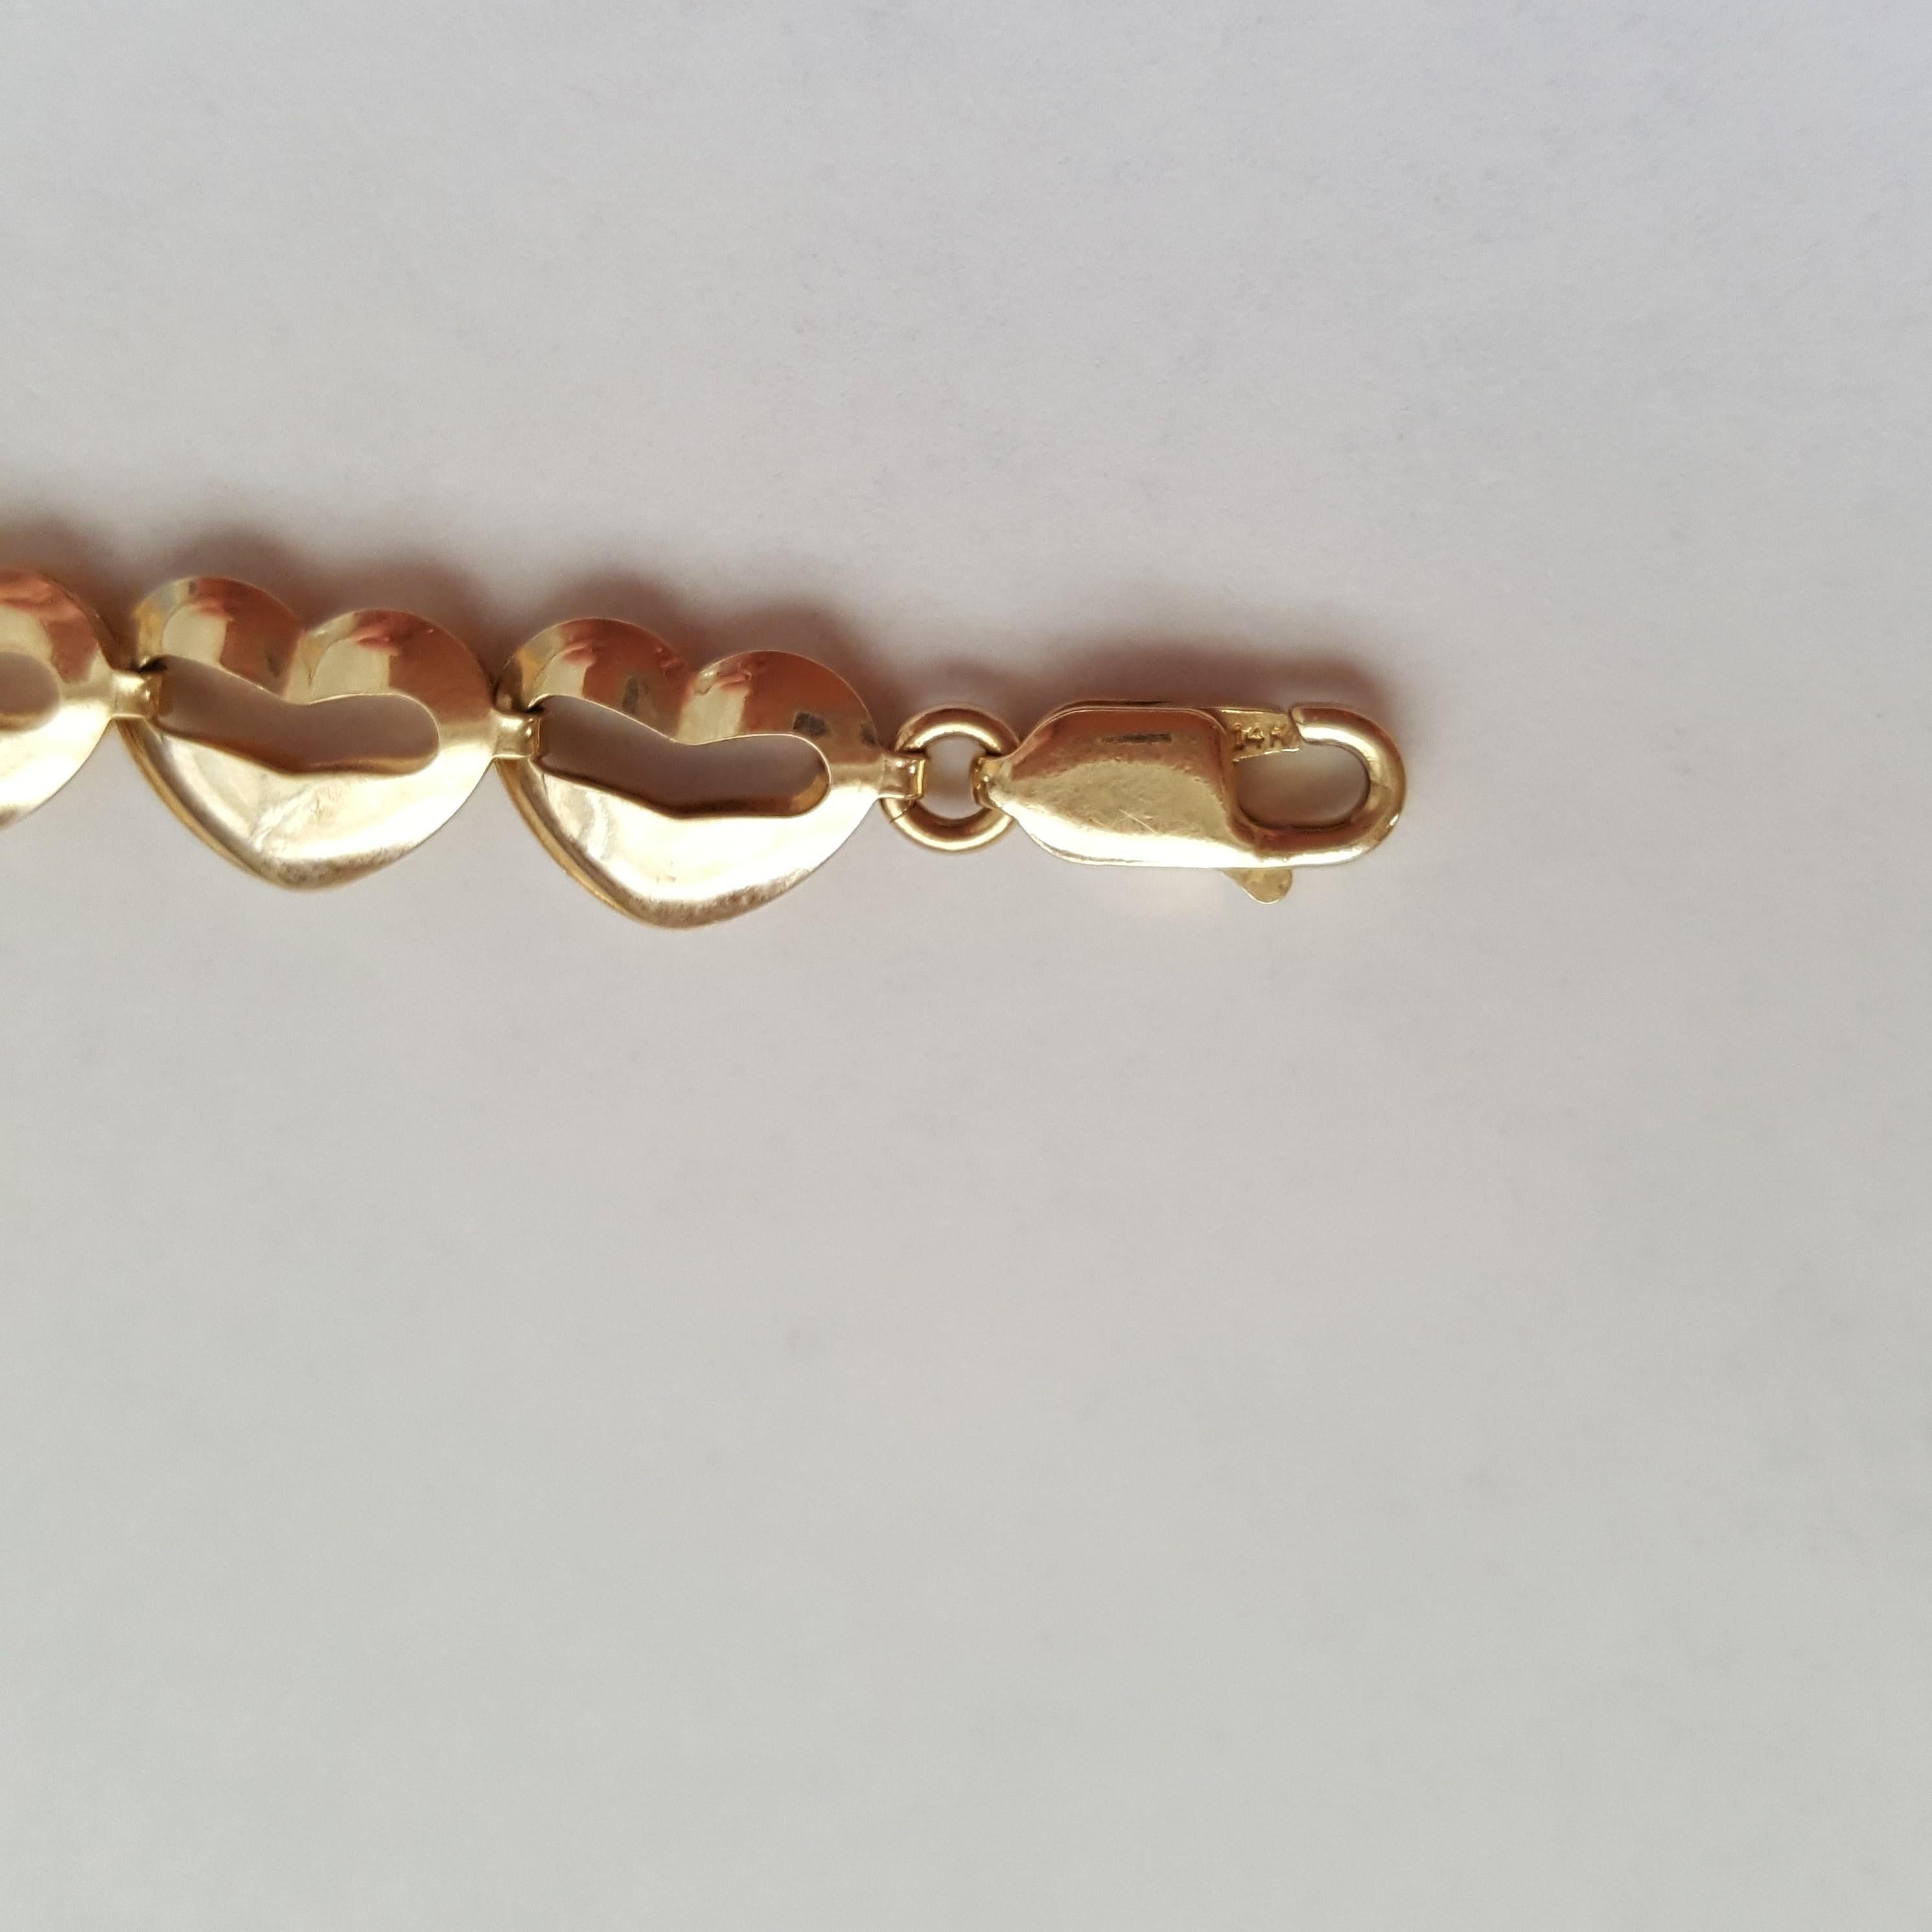 Women's 14kt Yellow Gold Heart Bracelet, 7 Plus, Excellent